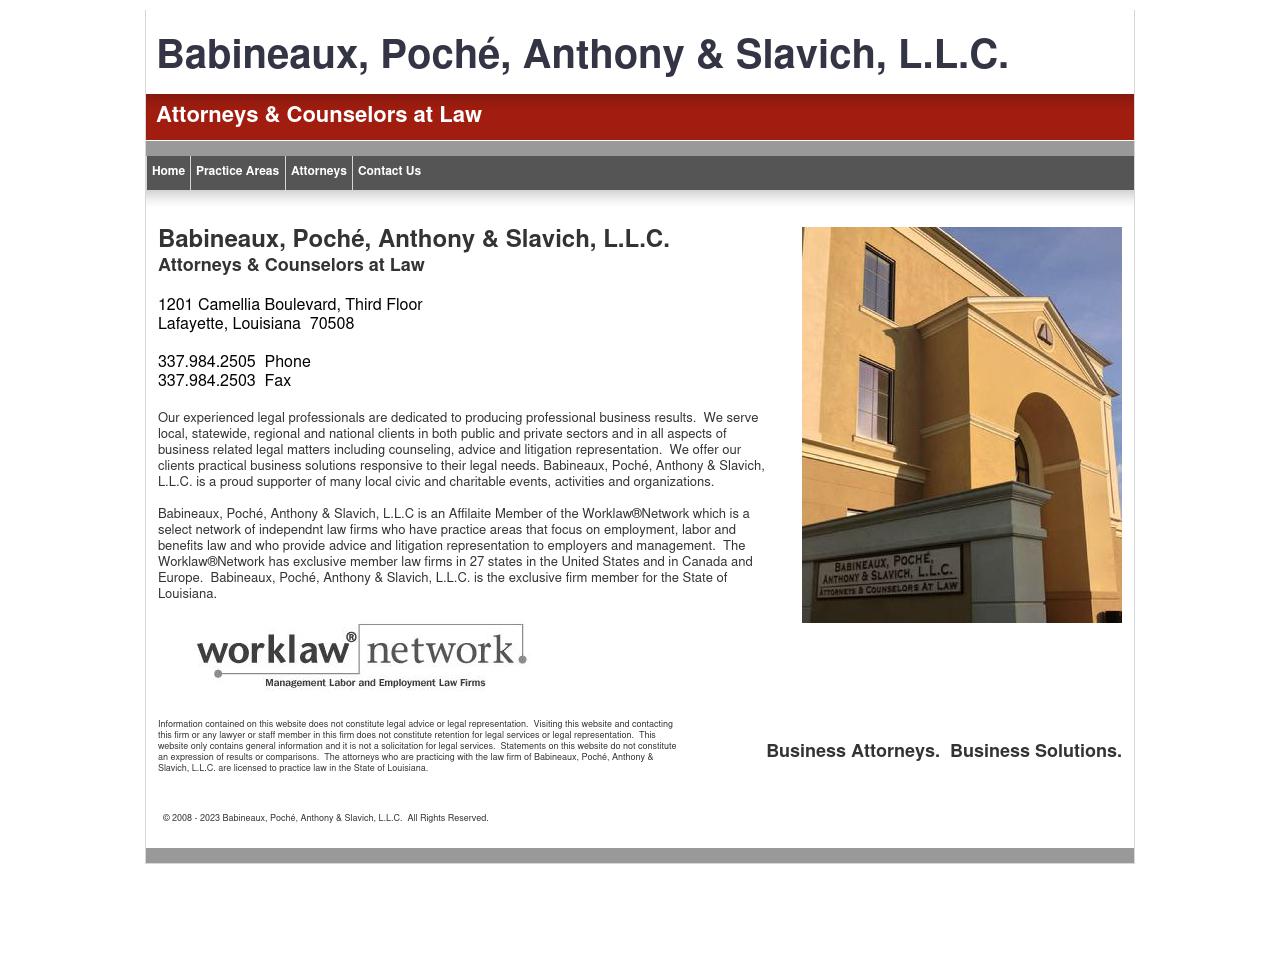 Babineaux Poche' Anthony & Slavich LLC - Lafayette LA Lawyers